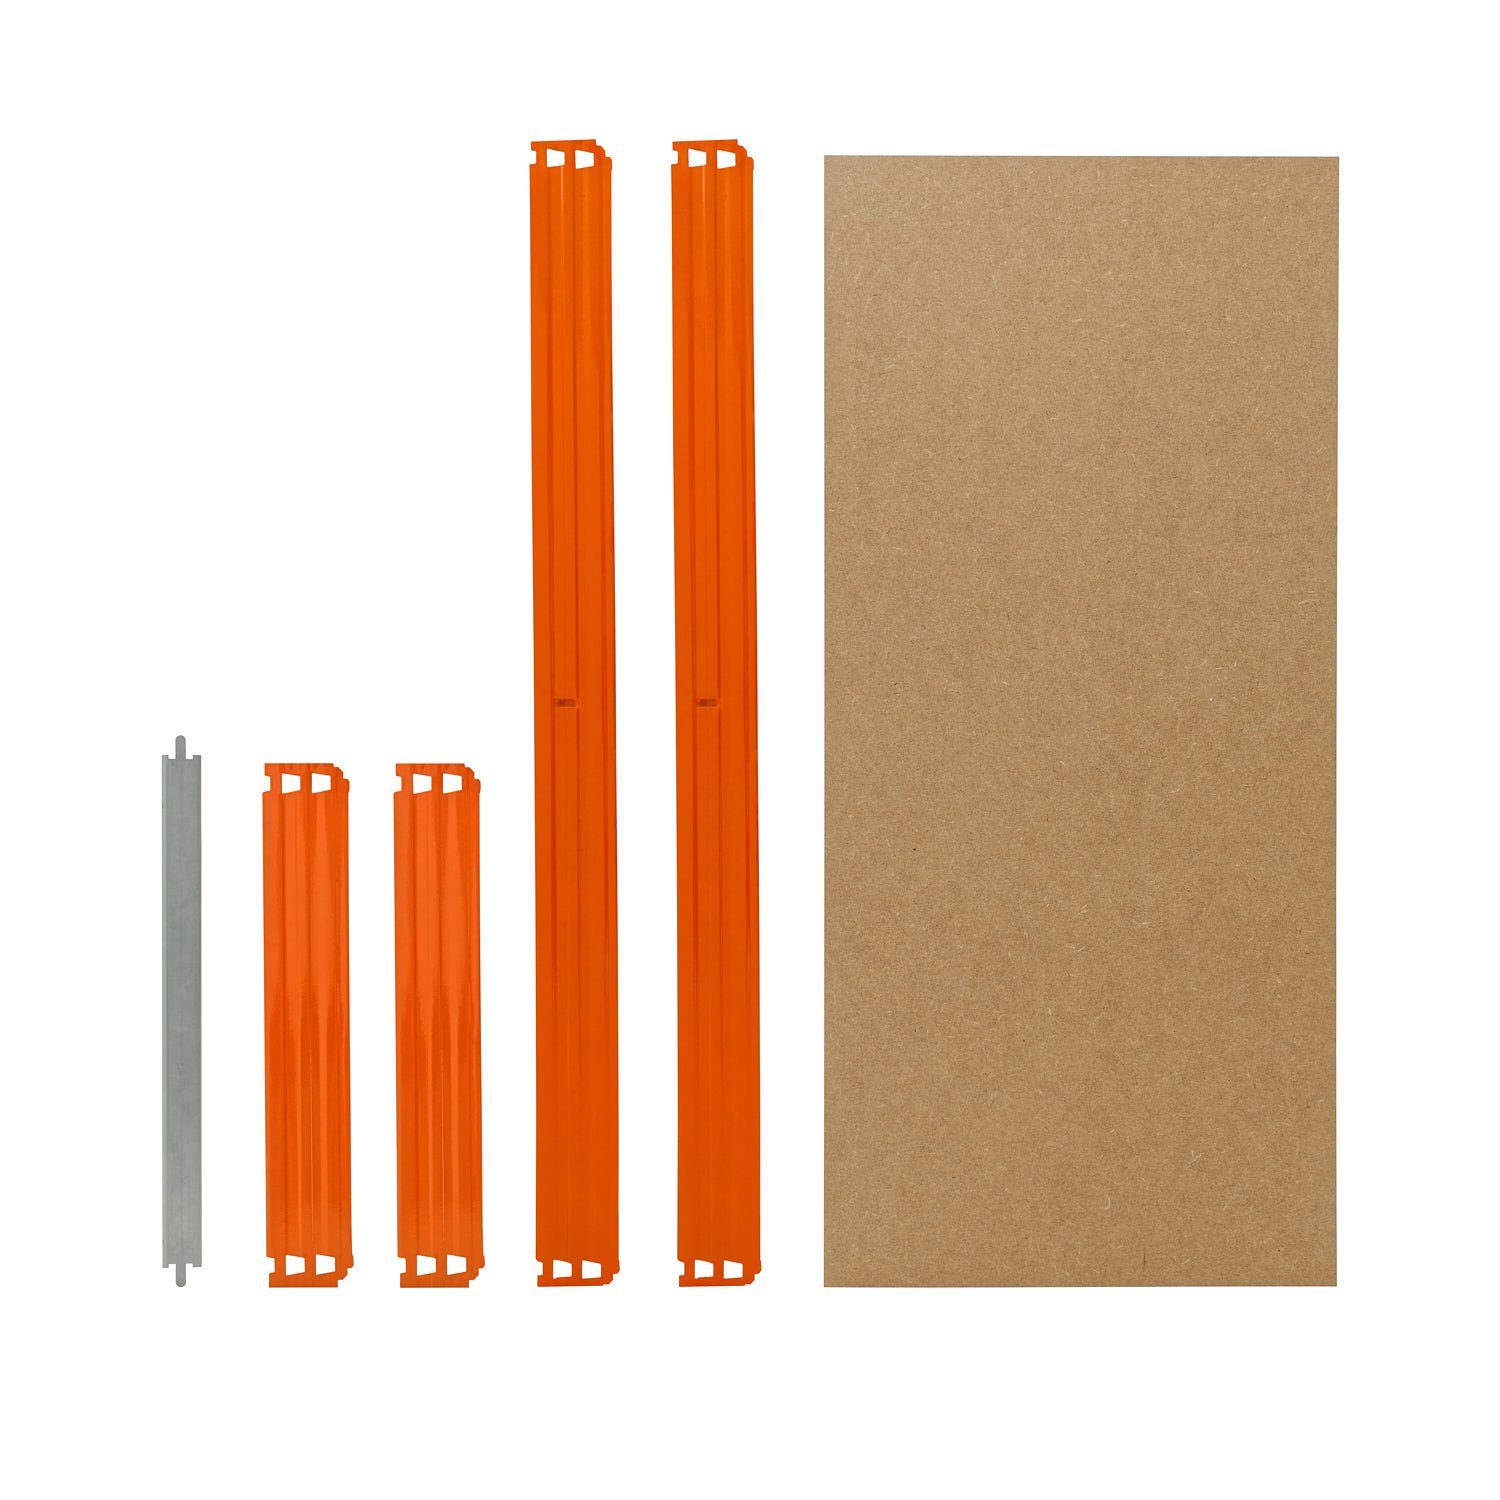 PROFI, blau-orange, Fachböden in HDF-Fachboden, Komplettes cm 45x23 Fachboden-Set für shelfplaza für Schwerlastregal Schwerlastregale Steckregale zusätzliche